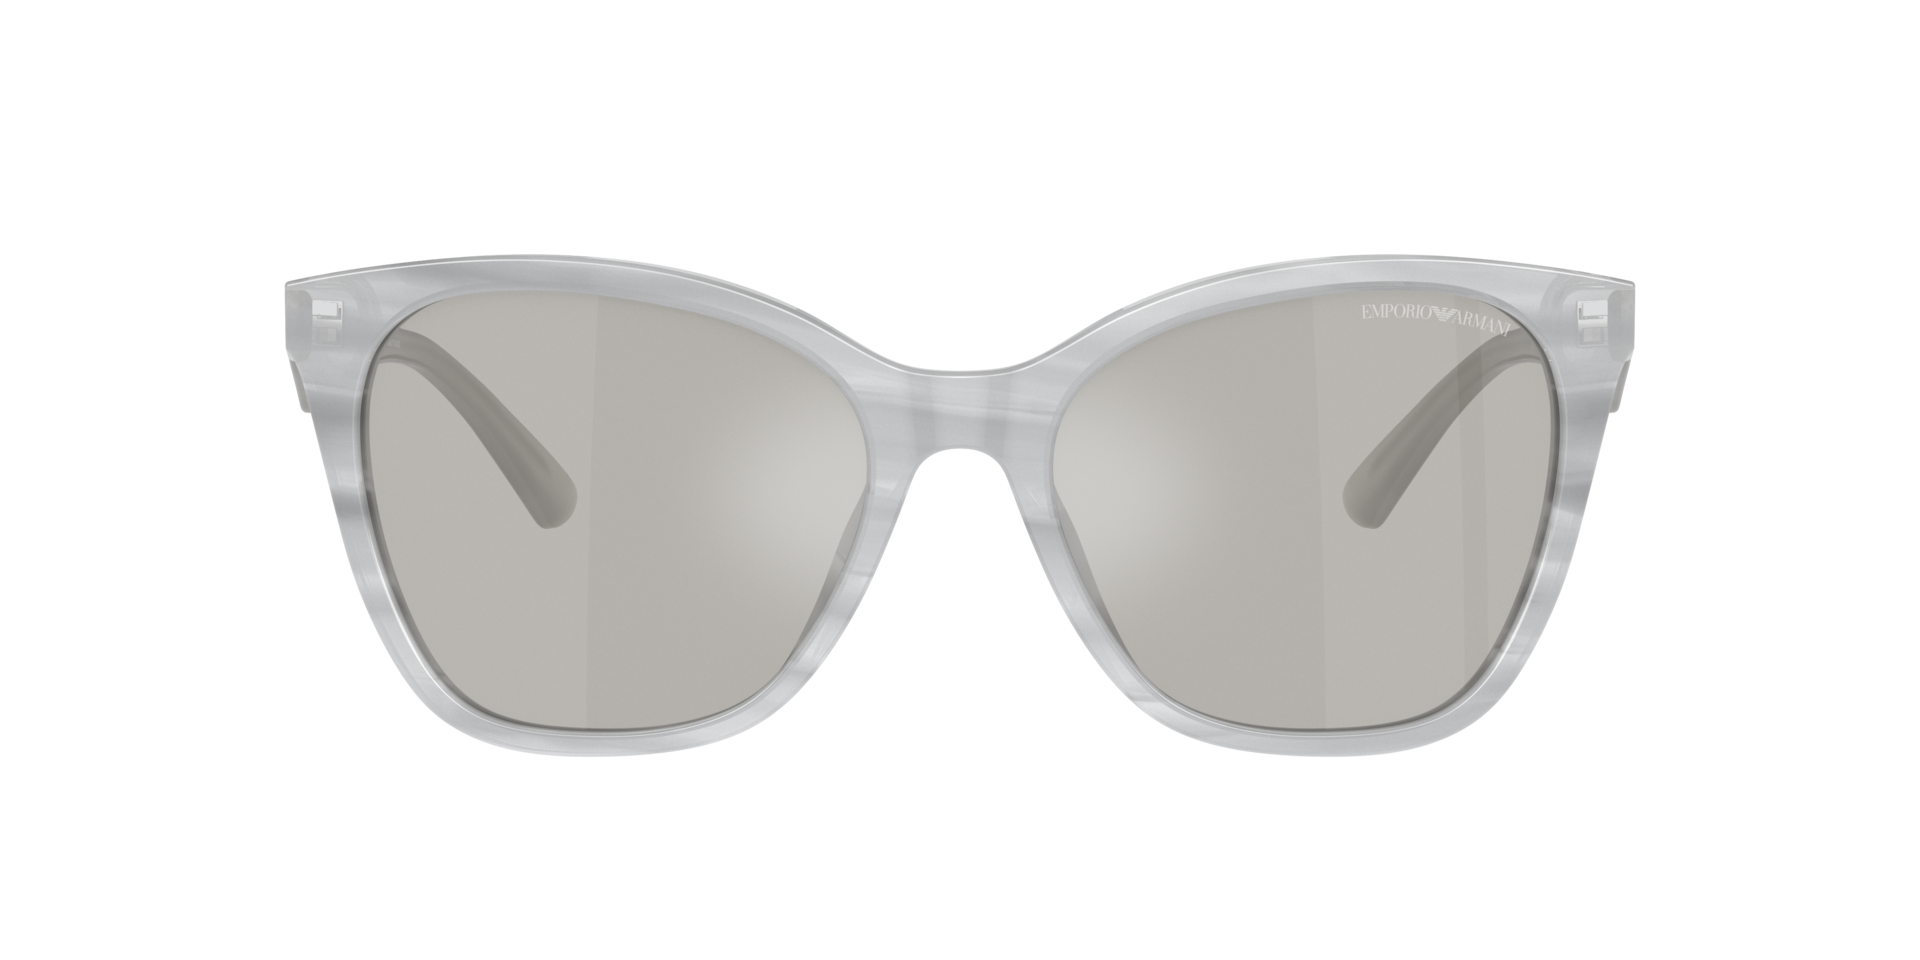 Das Bild zeigt die Sonnenbrille EA4222 611487 von der Marke Emporio Armani in grau.